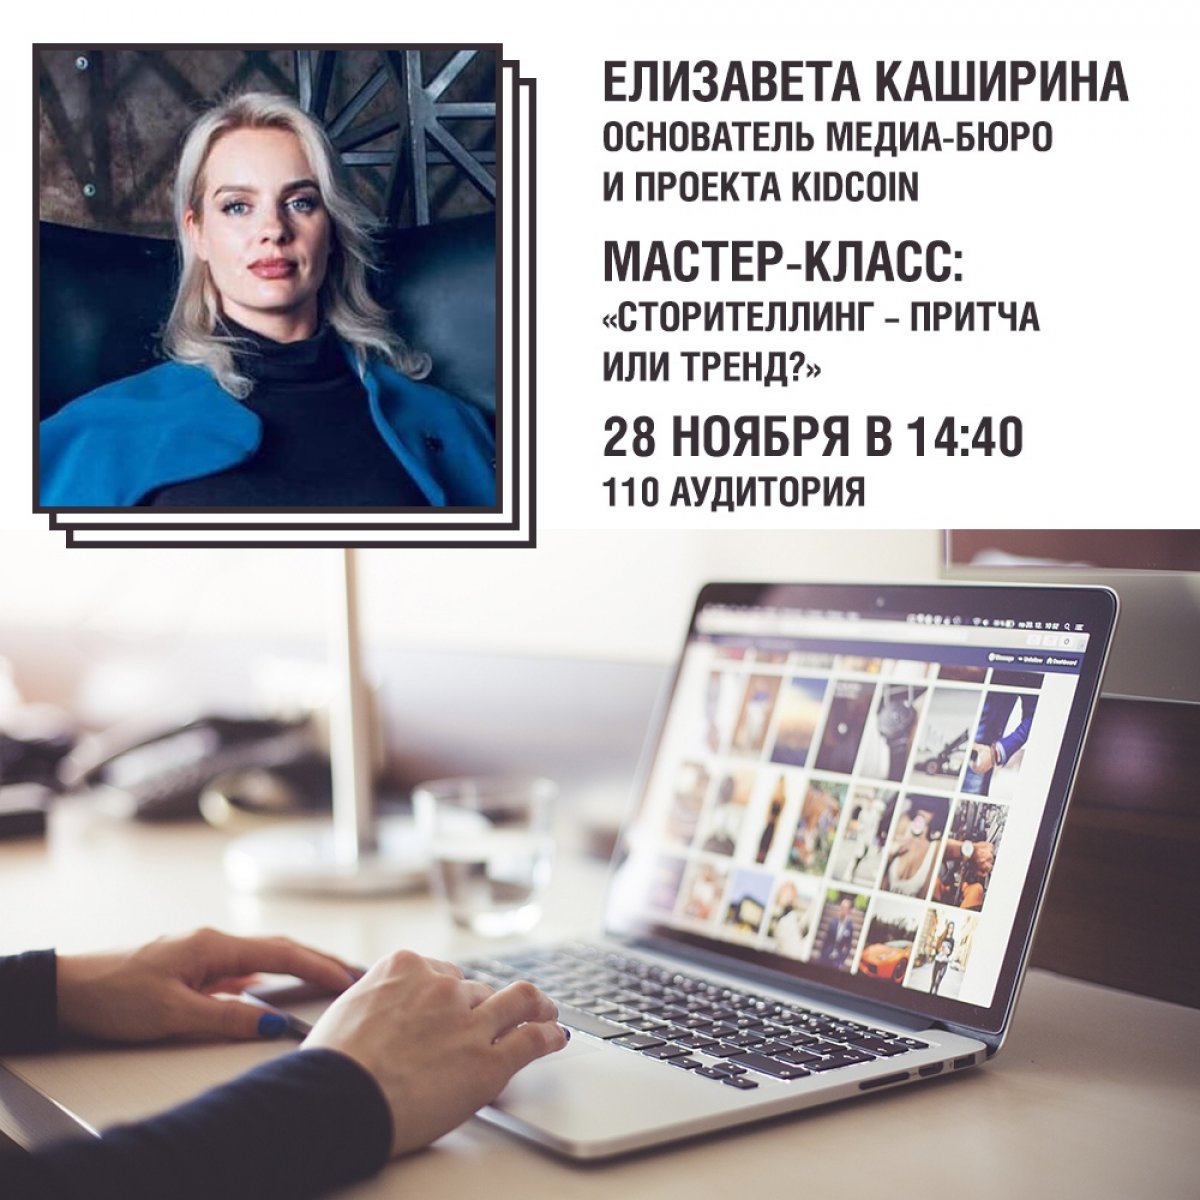 28 ноября на факультете рекламы и PR пройдет мастер-класс от эксперта в области digital-медиа и цифровых технологий, основателя медиа-бюро и проекта KIDCOIN Елизаветы Кашириной.